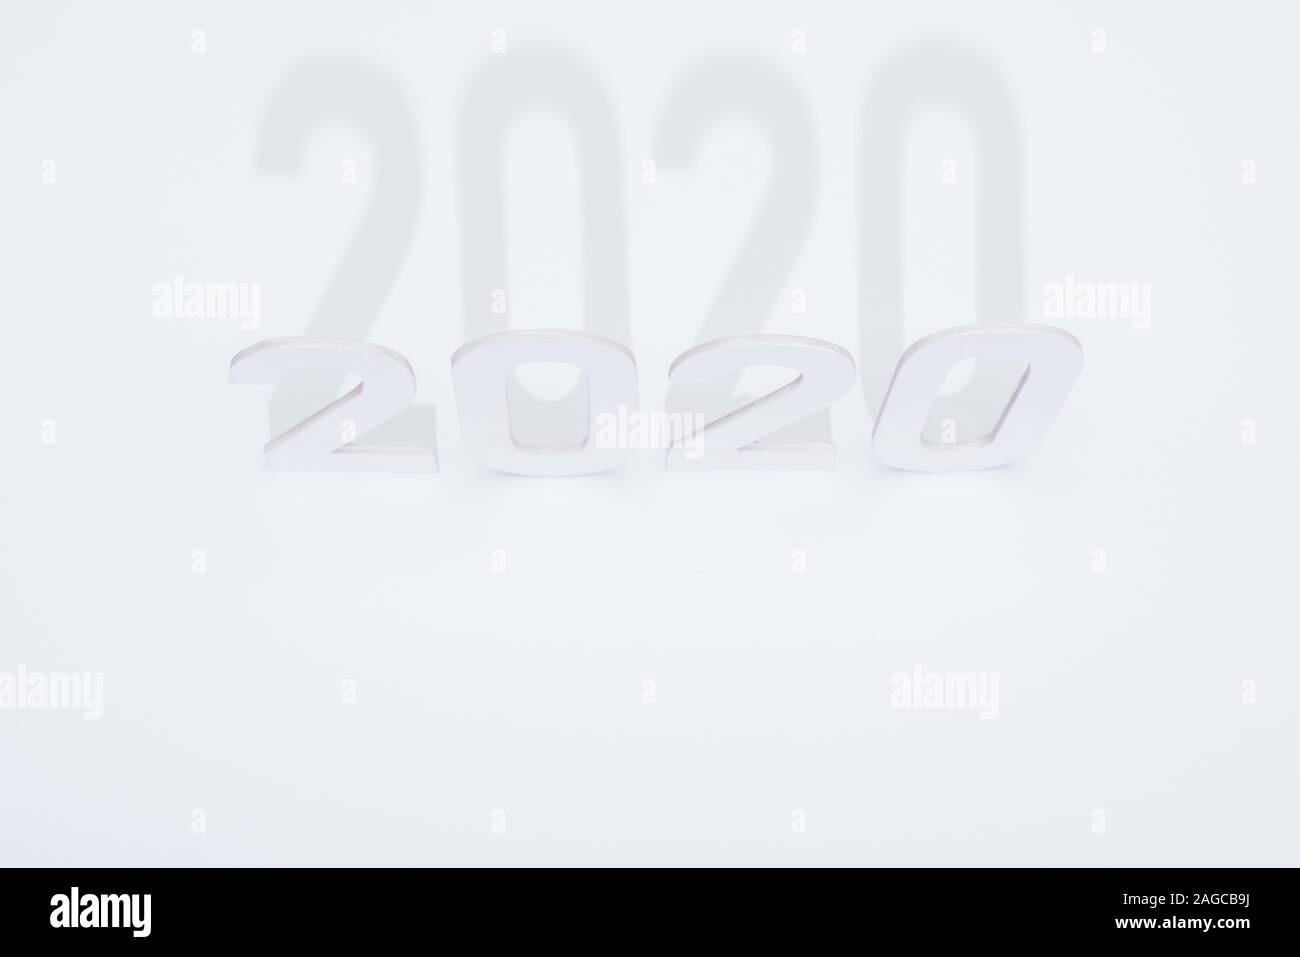 Vue de dessus de papier 2020 numéros avec ombre sur fond blanc Banque D'Images